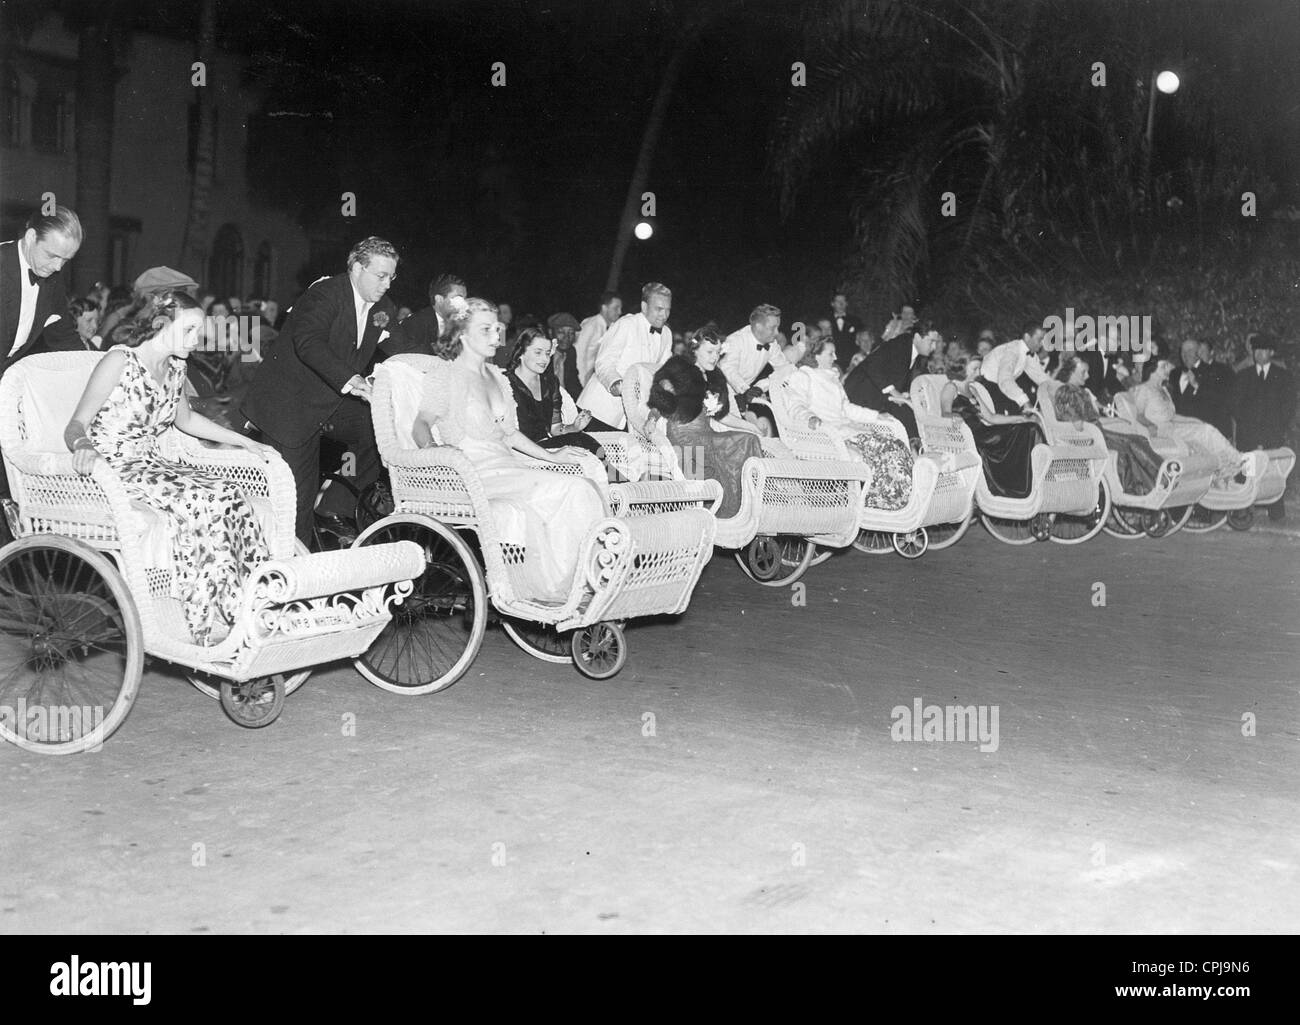 Les participants d'une étrange course de vtt à Palm Beach, 1938 Banque D'Images